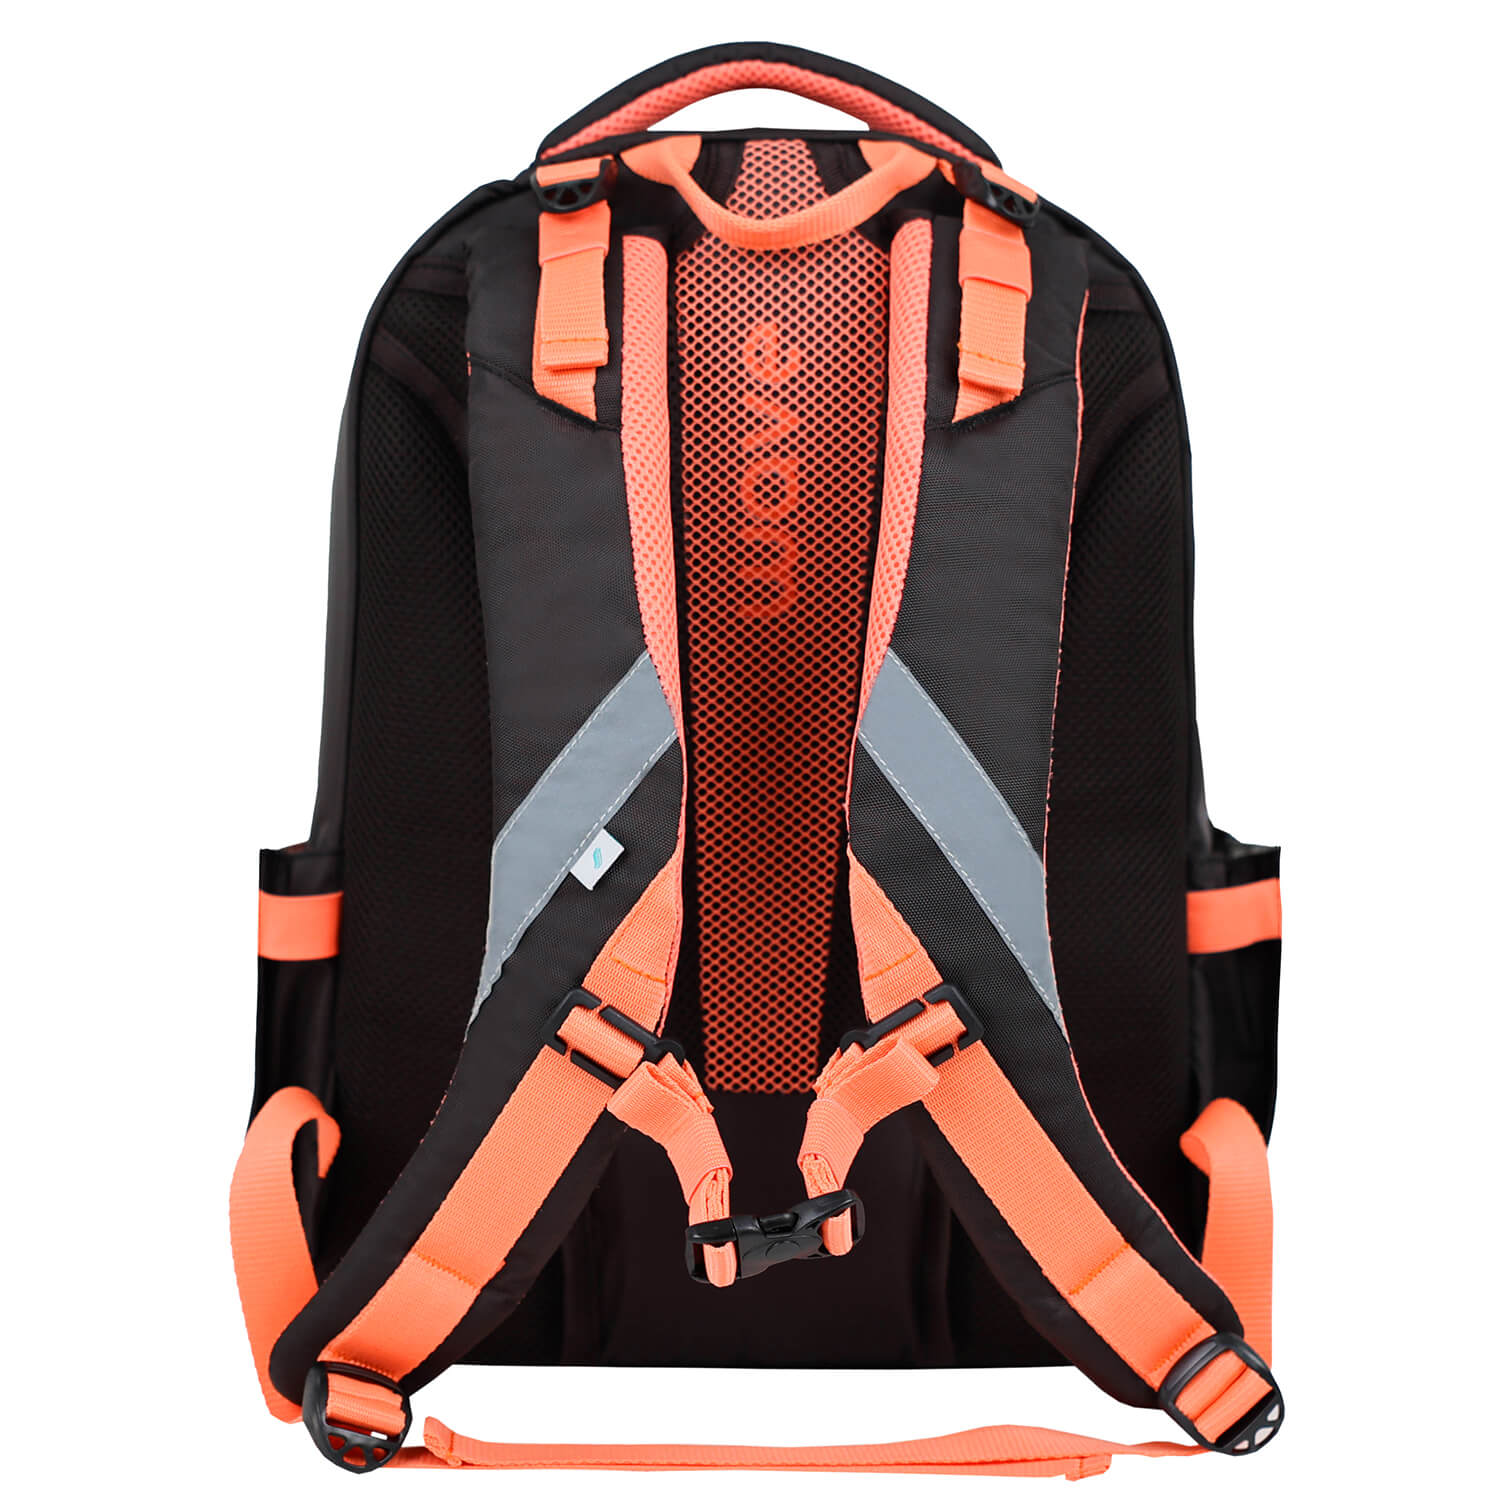 Wave Prime Blooms school backpack